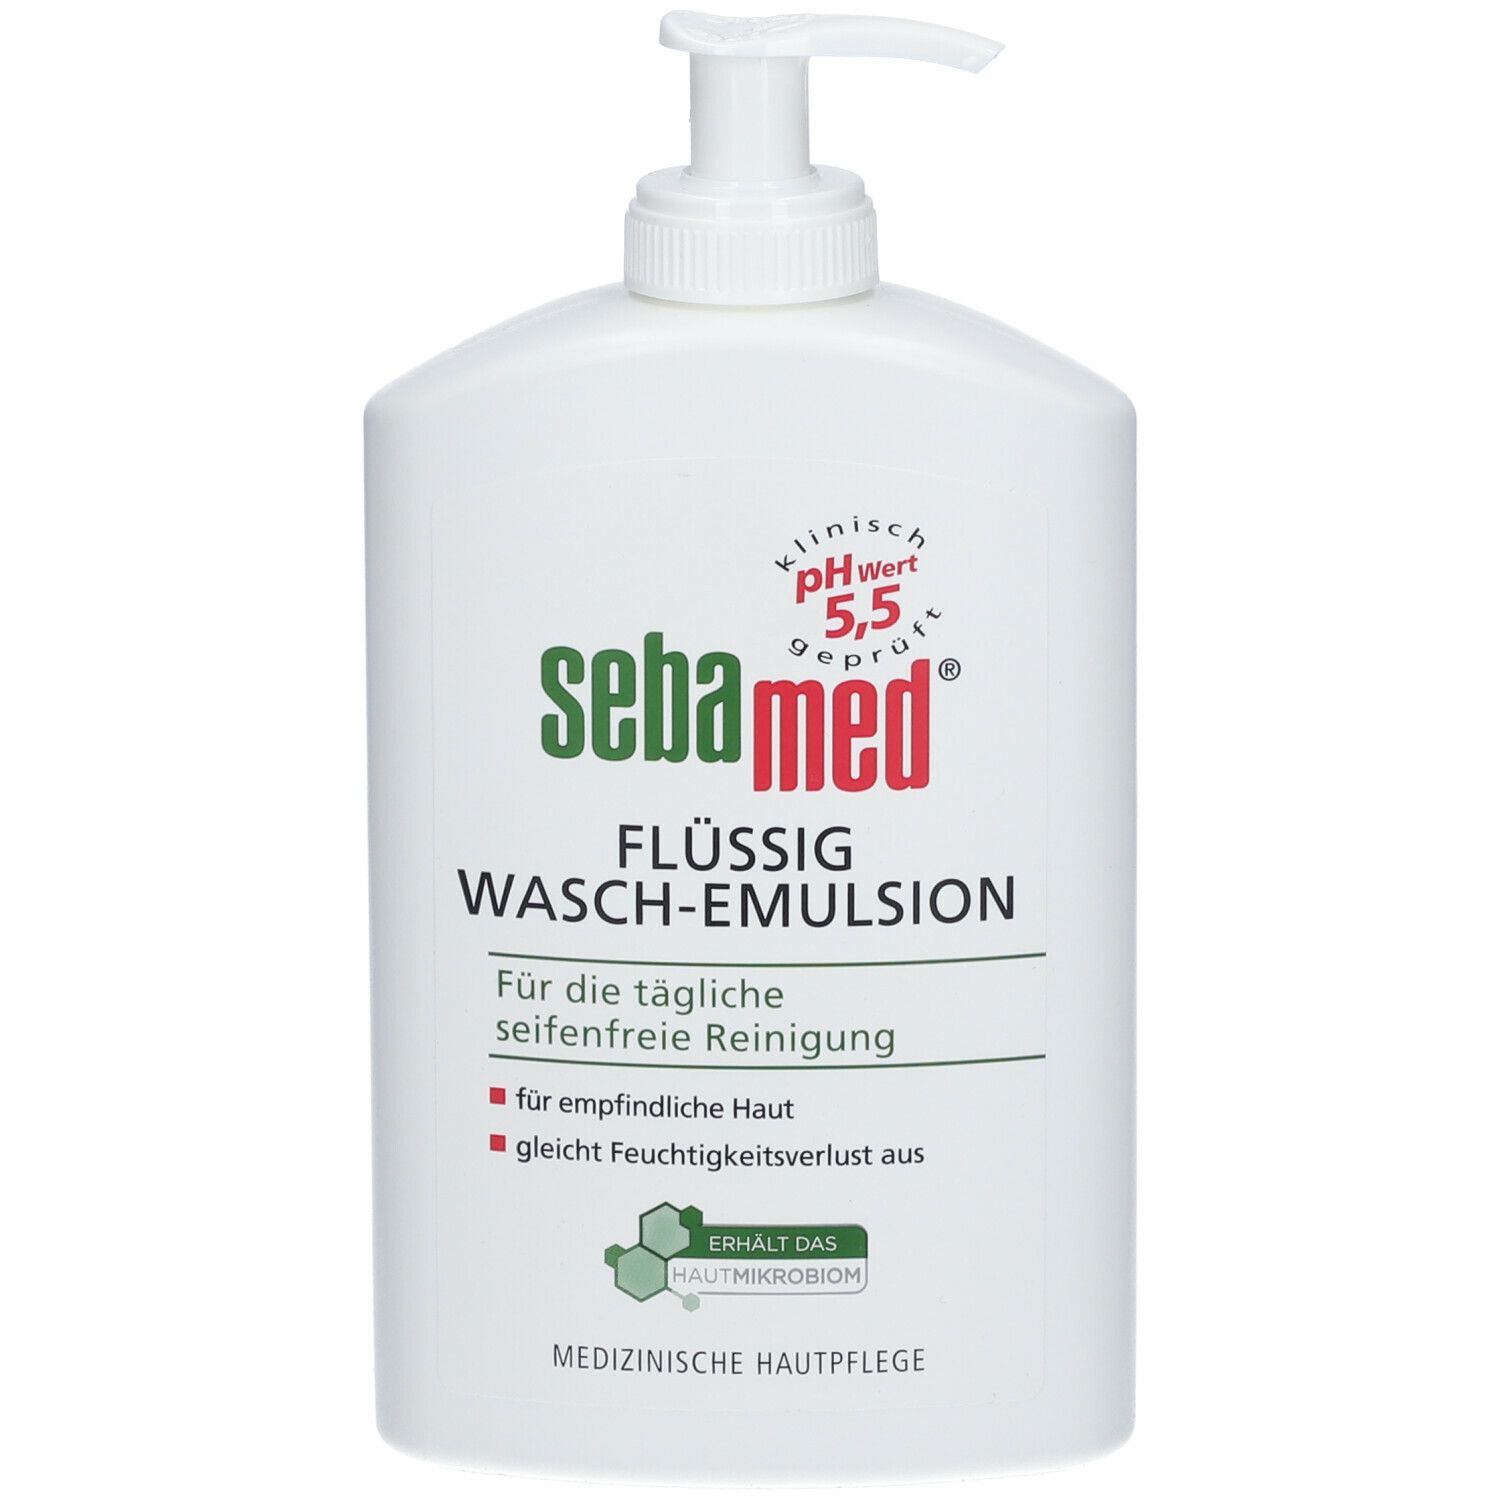 sebamed® flüssig Waschemulsion Spender